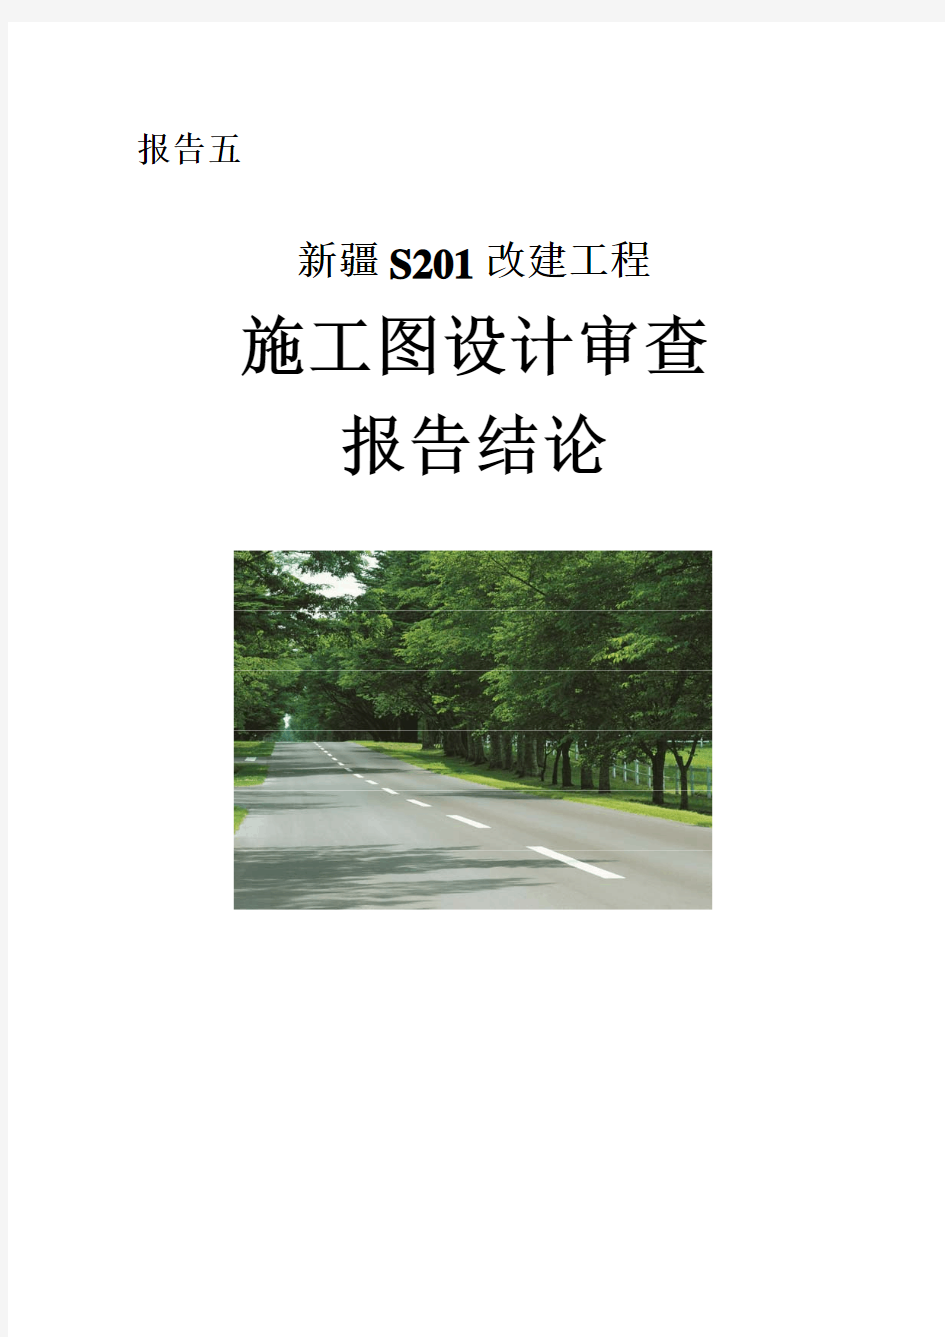 案例1 S201施工图设计道路安全评价报告结论